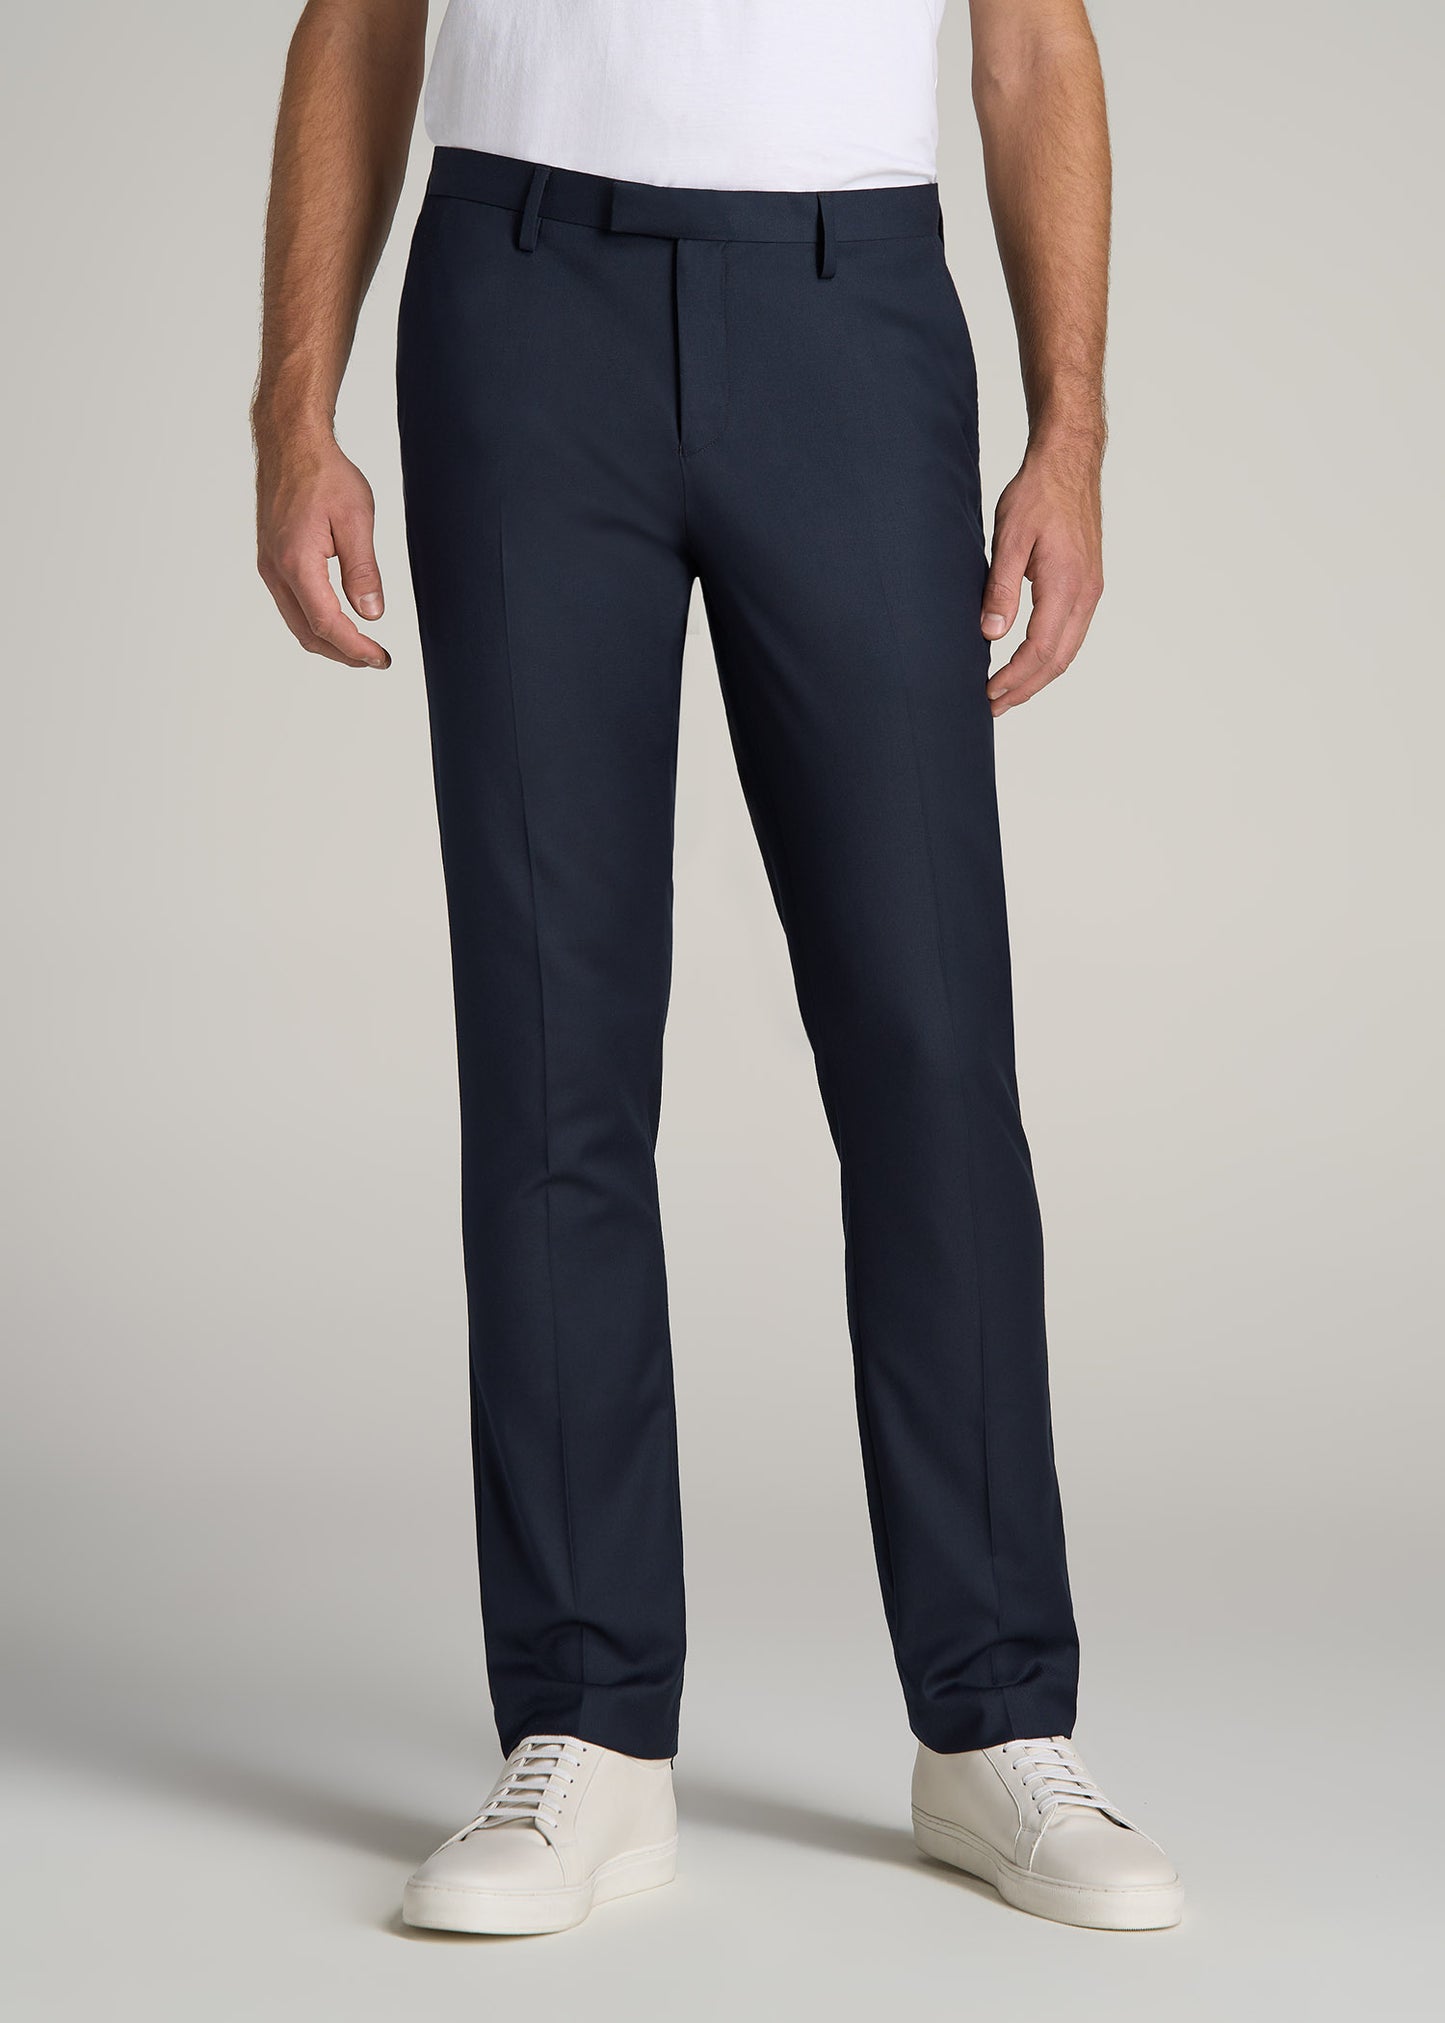 Black Suit Trousers for Men Stretch Slim Fit Cropped Pants Gray Skinny  Smart Casual Capri Pants Male Suit Pants Mens Dress Pants